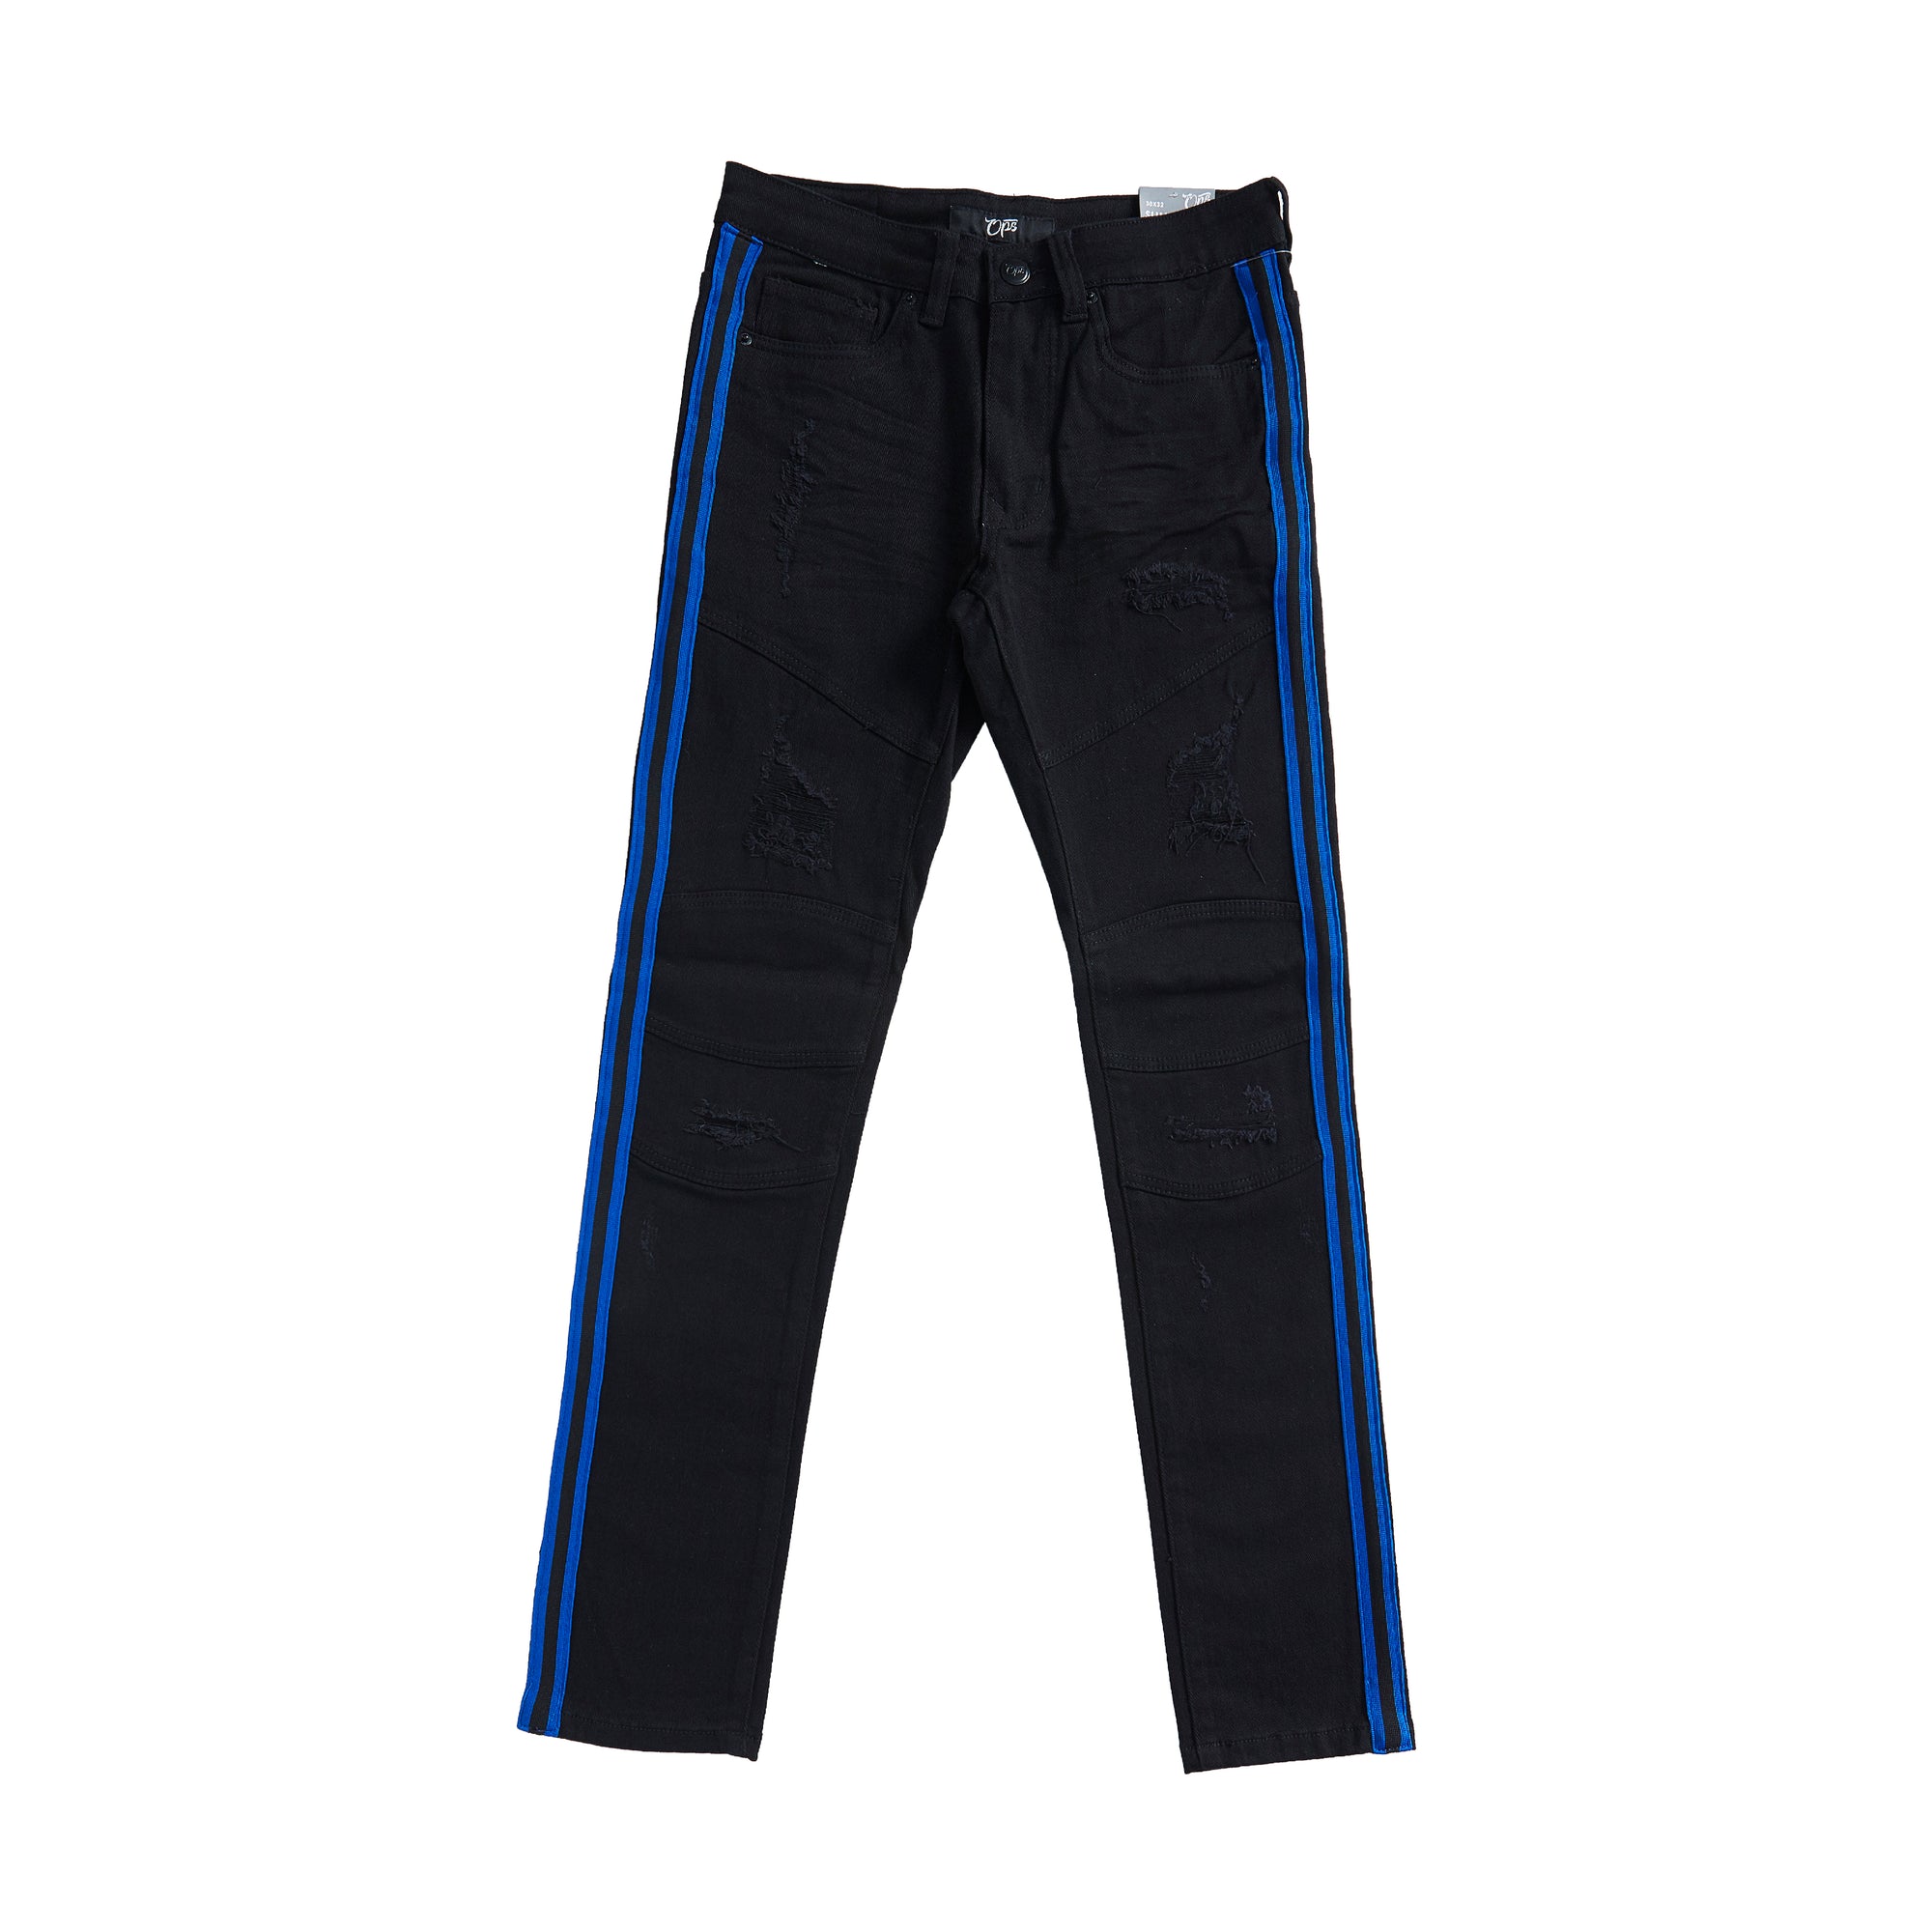 Premium Striped Jean (Black/Royal Blue)